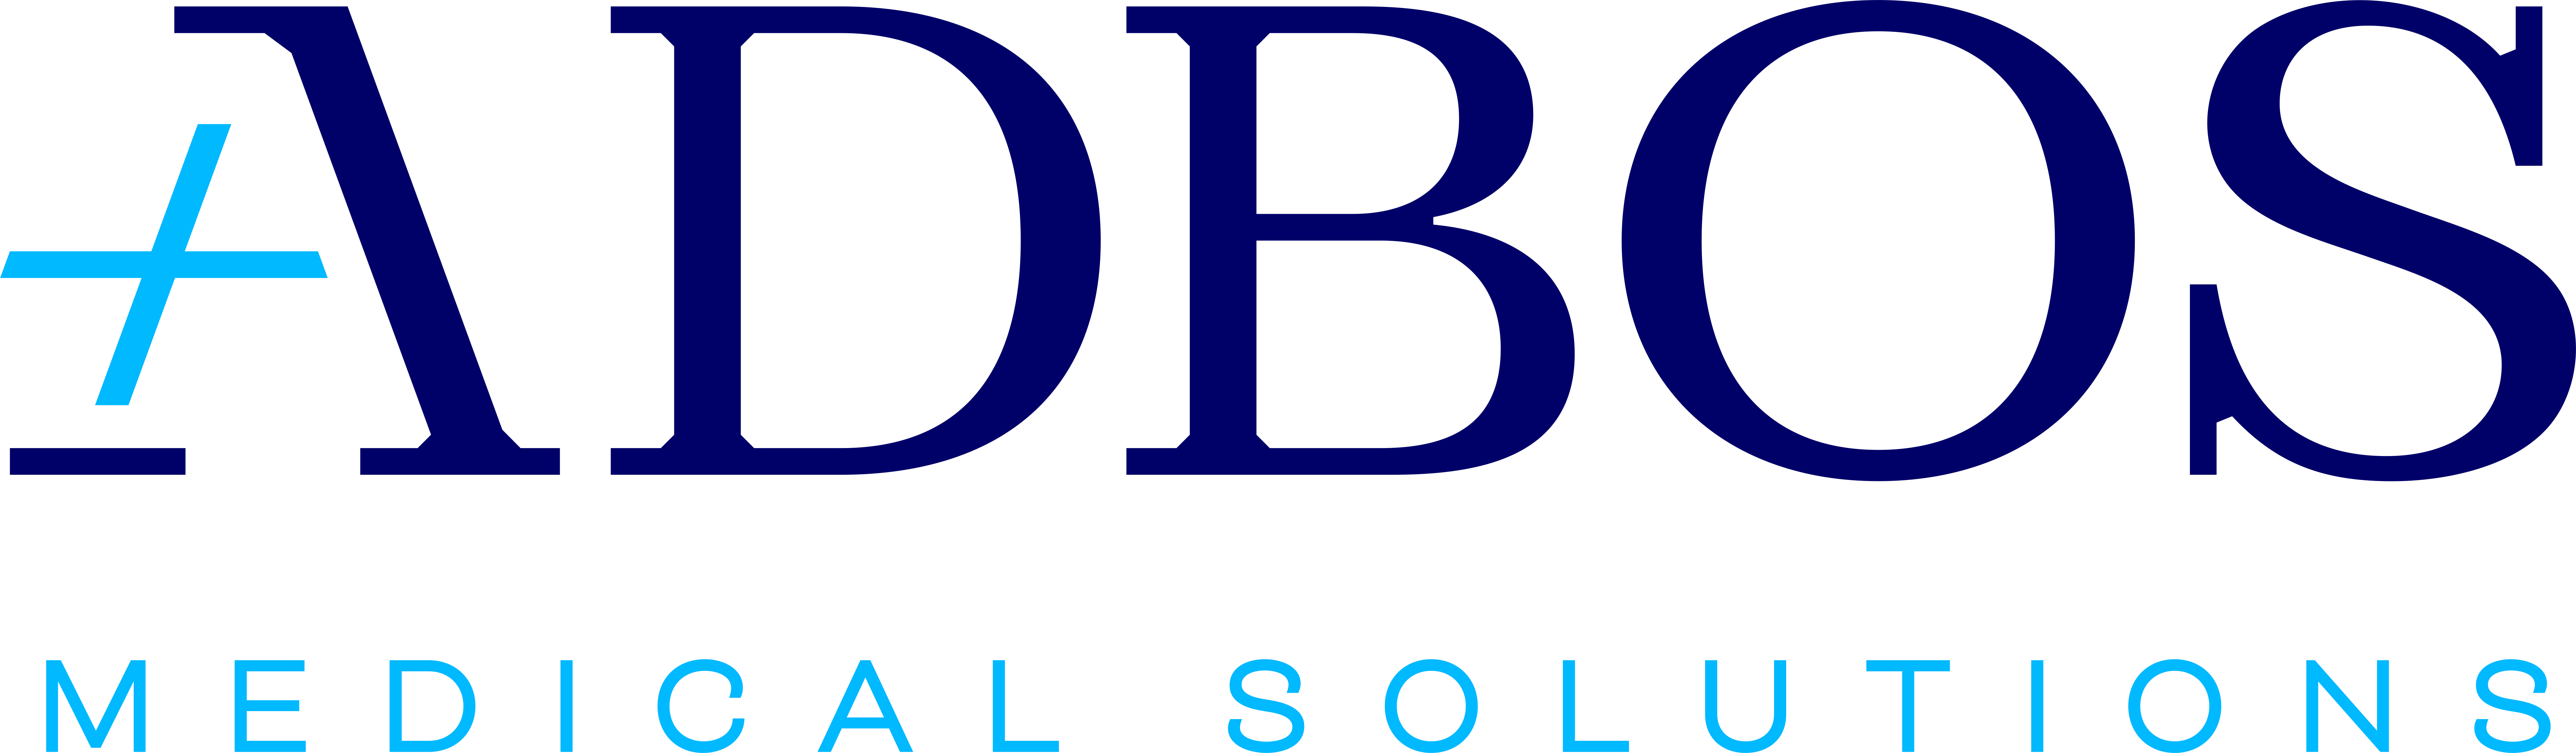 ADBOS GmbH